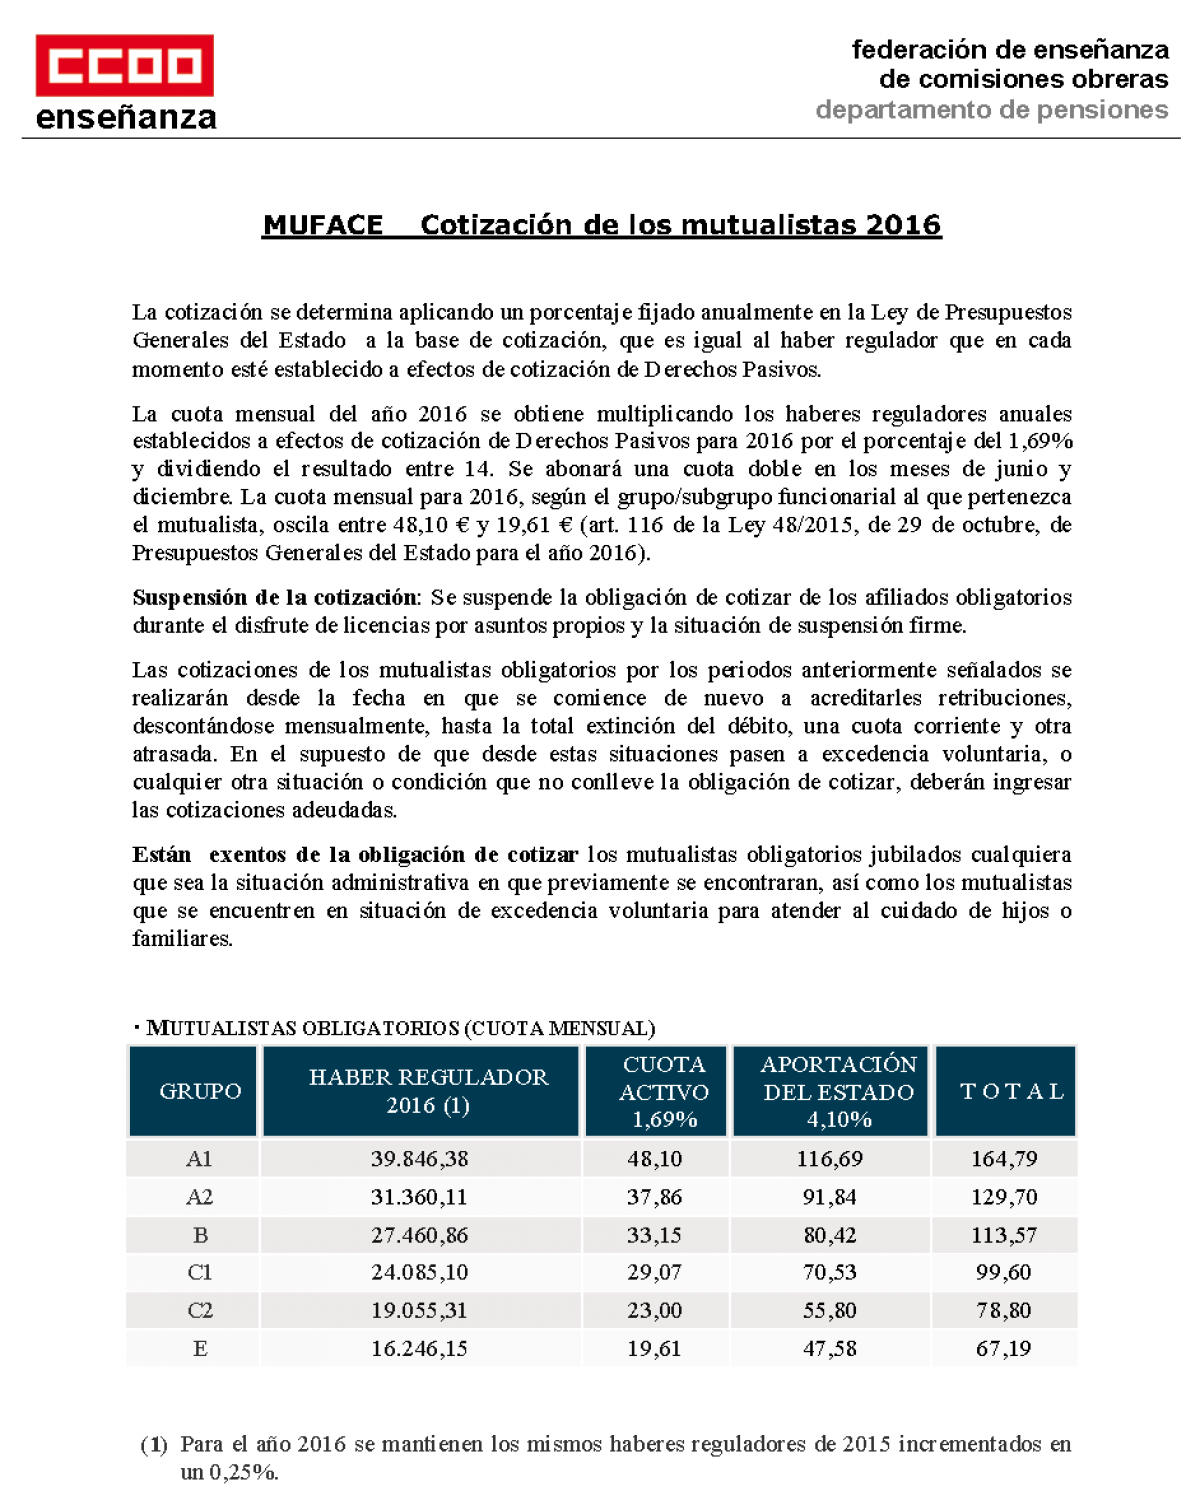 MUFACE: Cotización de los mutualistas en 2016